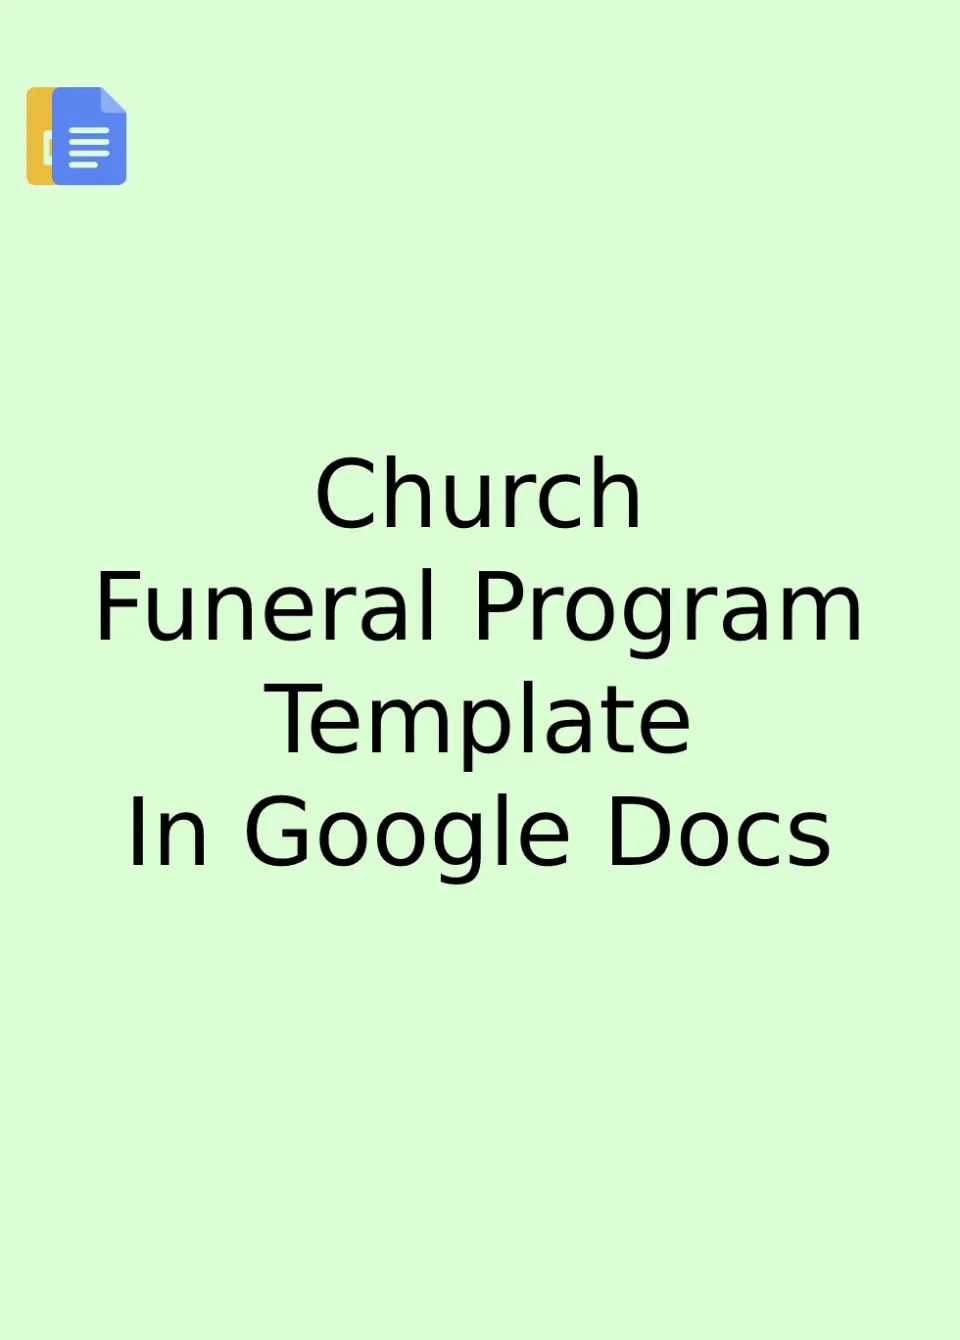 Church Funeral Program Template